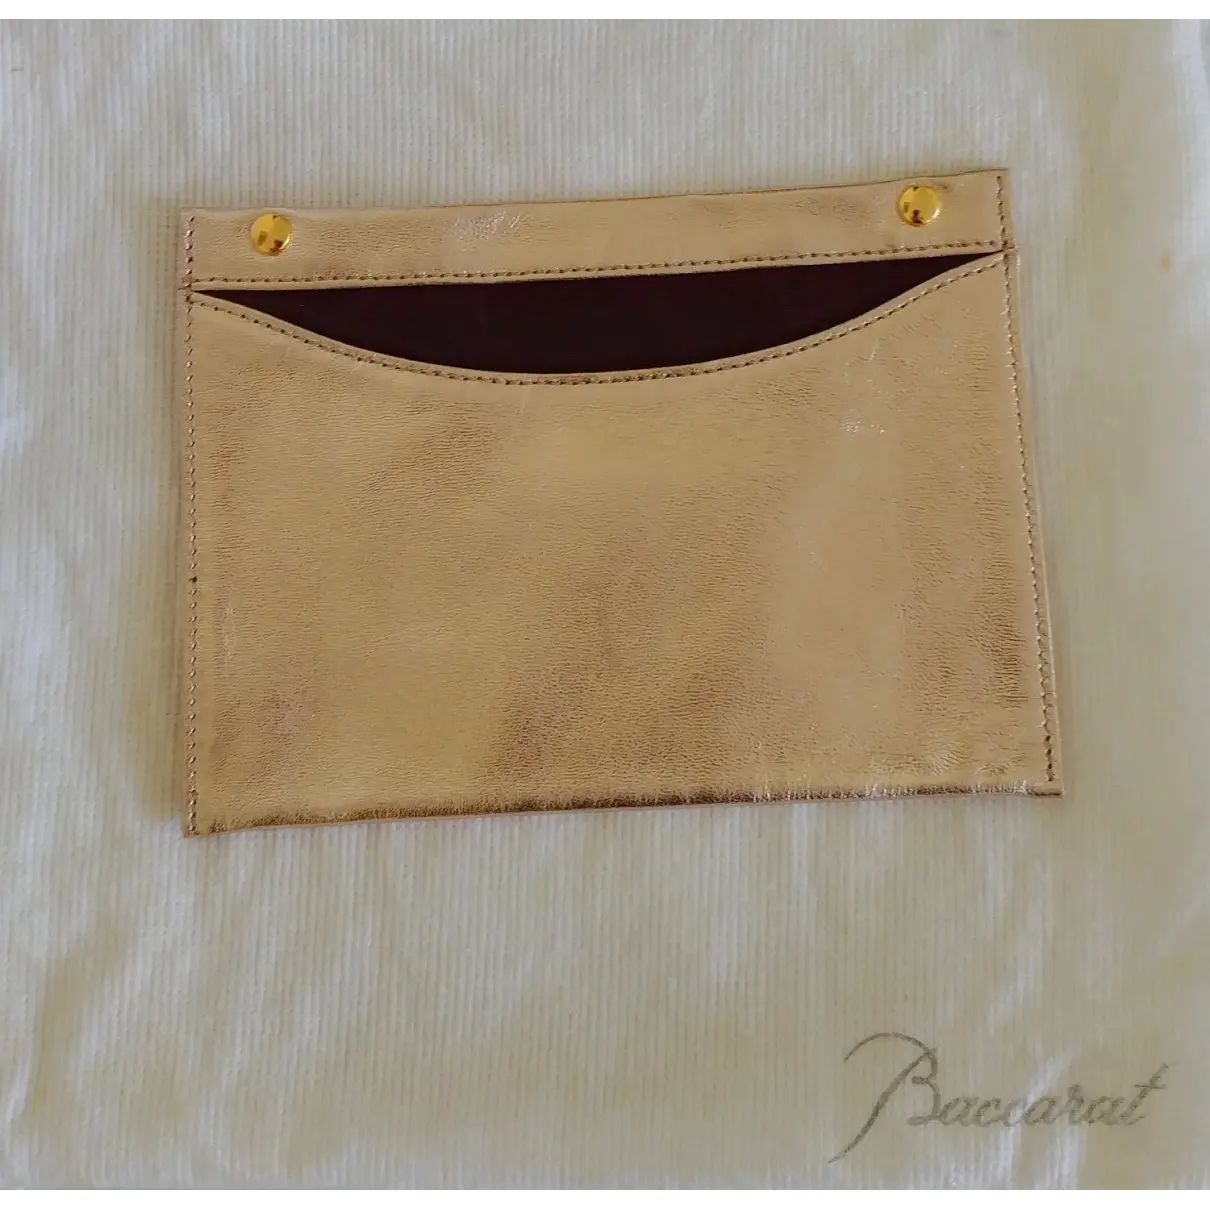 Leather clutch bag Baccarat - Vintage